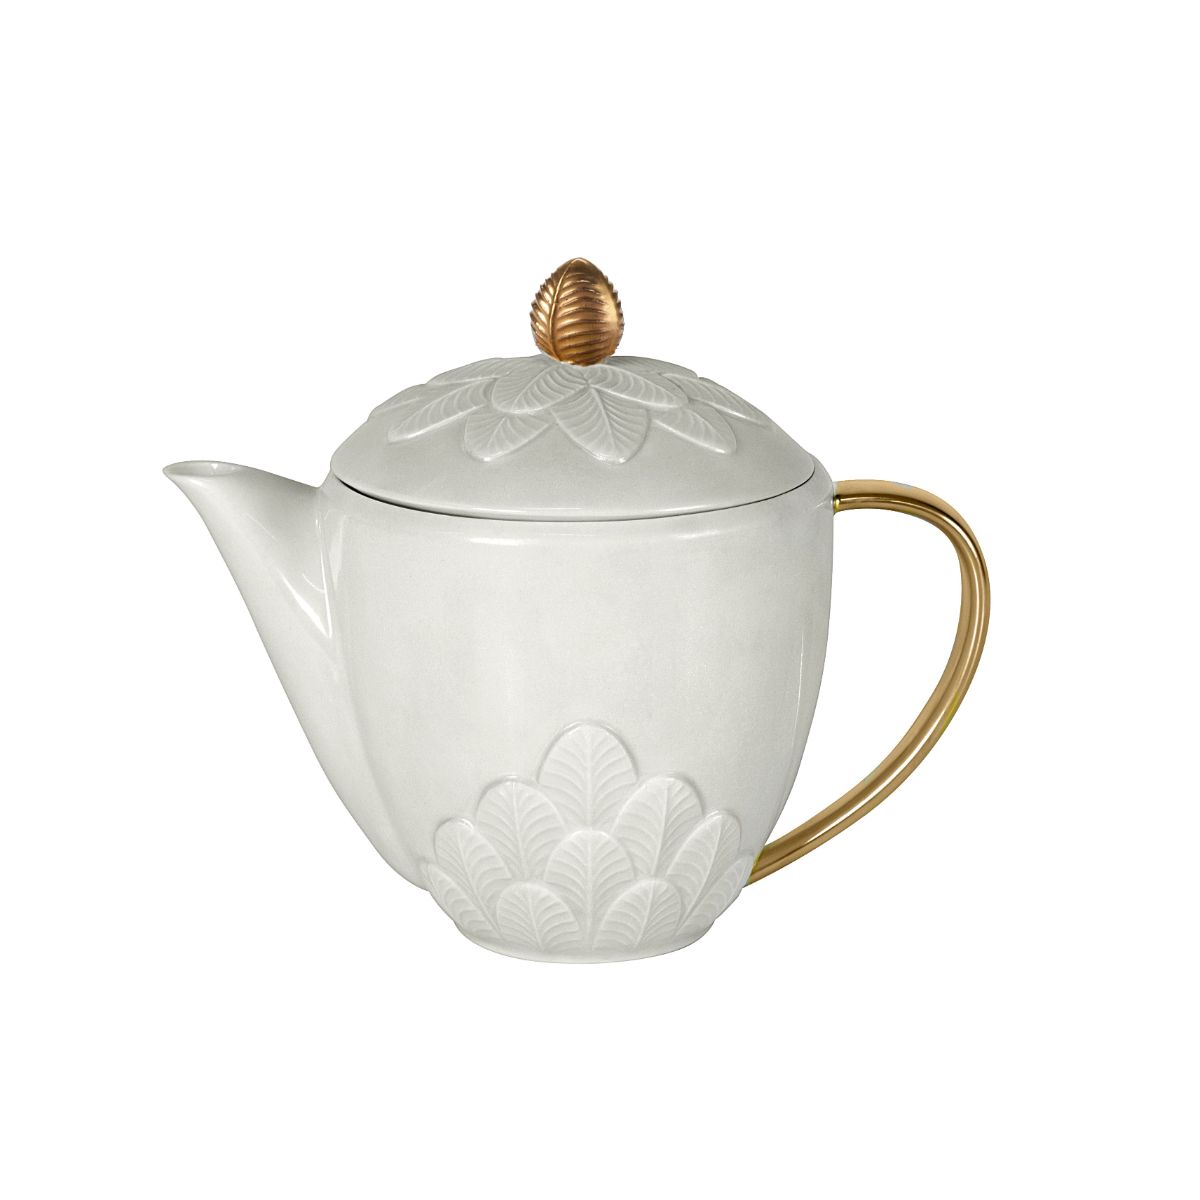 Peacock White & Gold Teapot